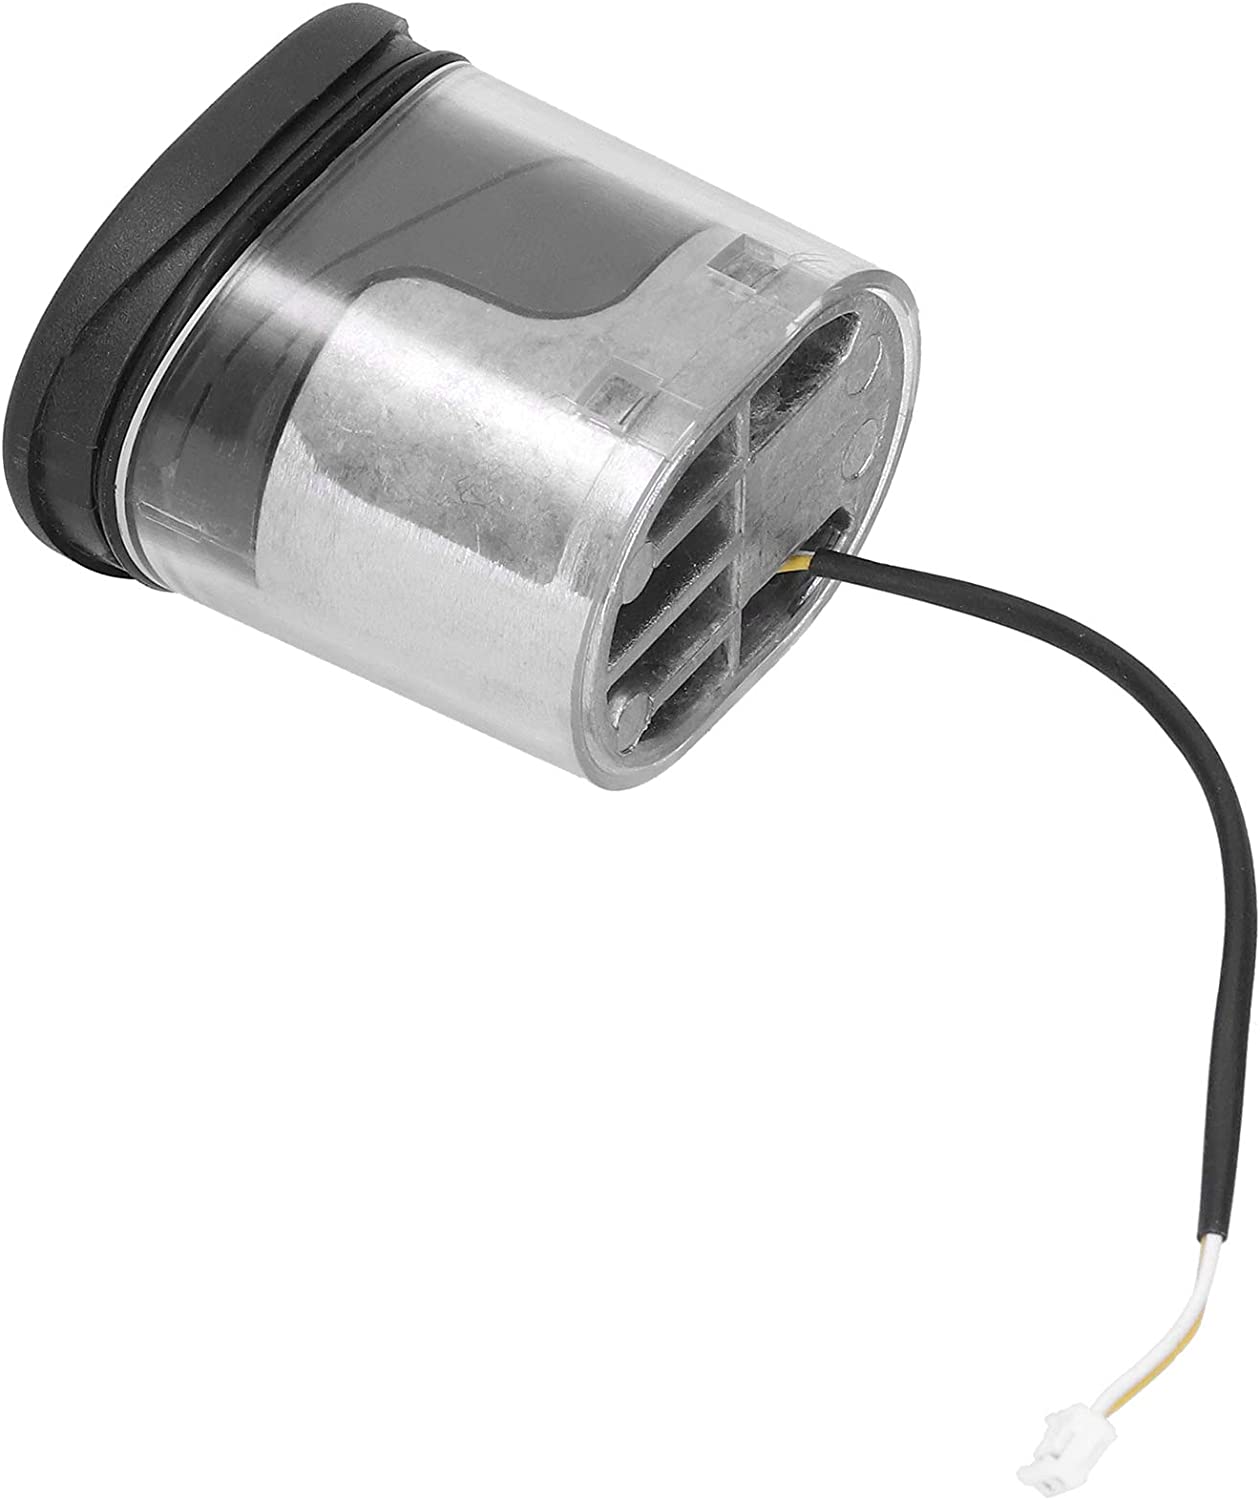 Phare de remplacement pour Scooter électrique, feu avant LED étanche, accessoire pour Scooter électrique MAX G30 